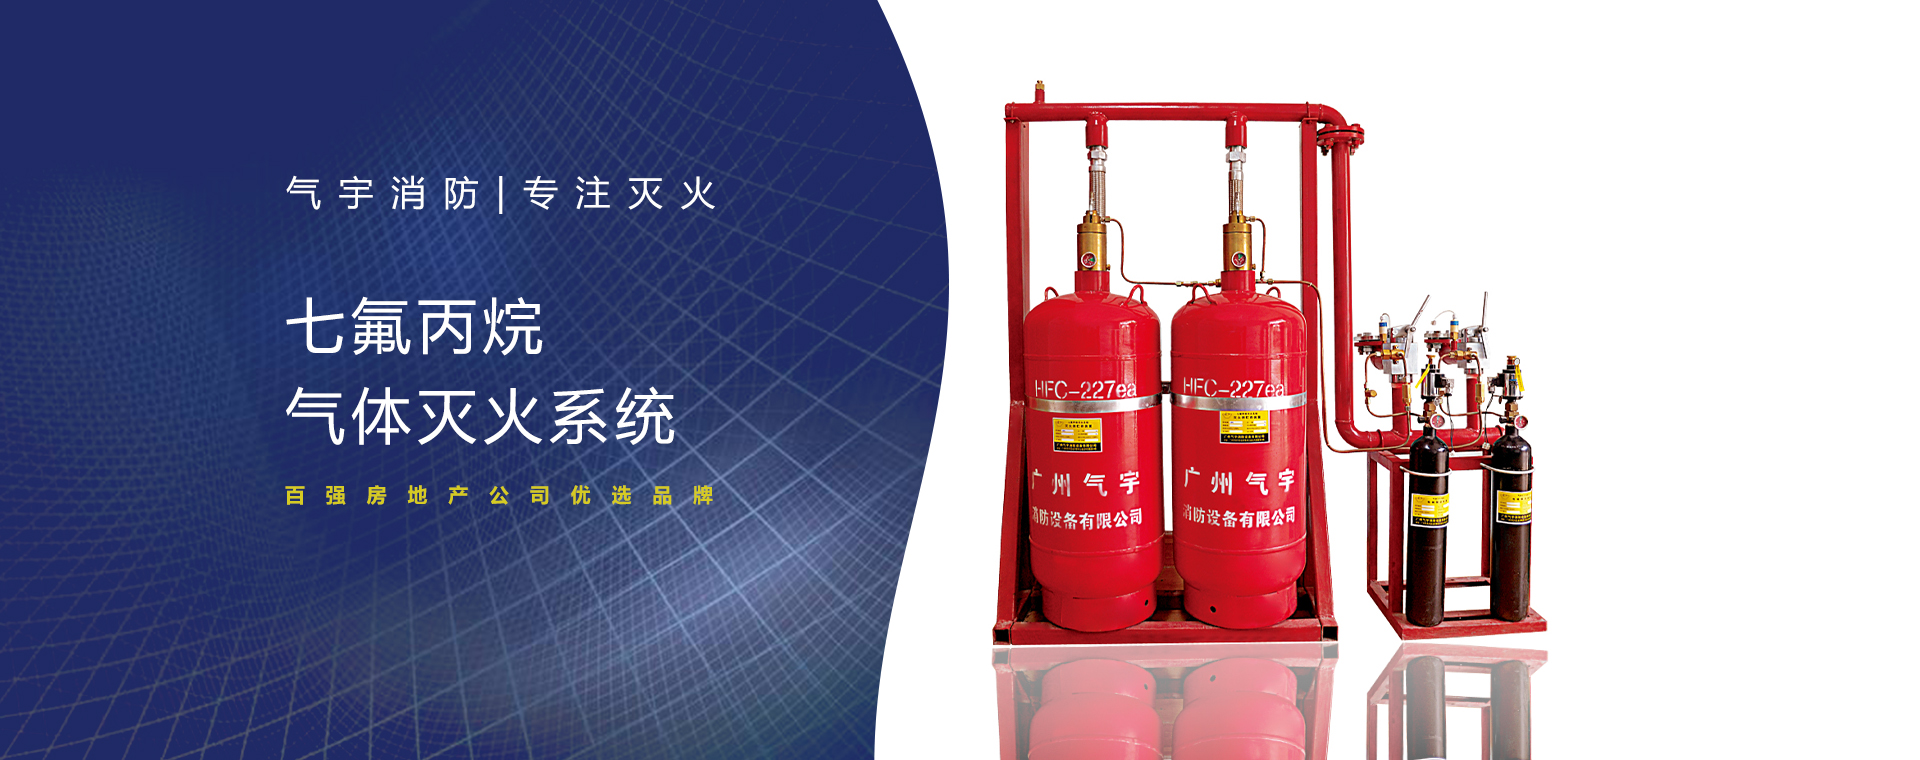 管网七氟丙烷自动灭火系统热销 广州气宇生产厂家优惠价图片